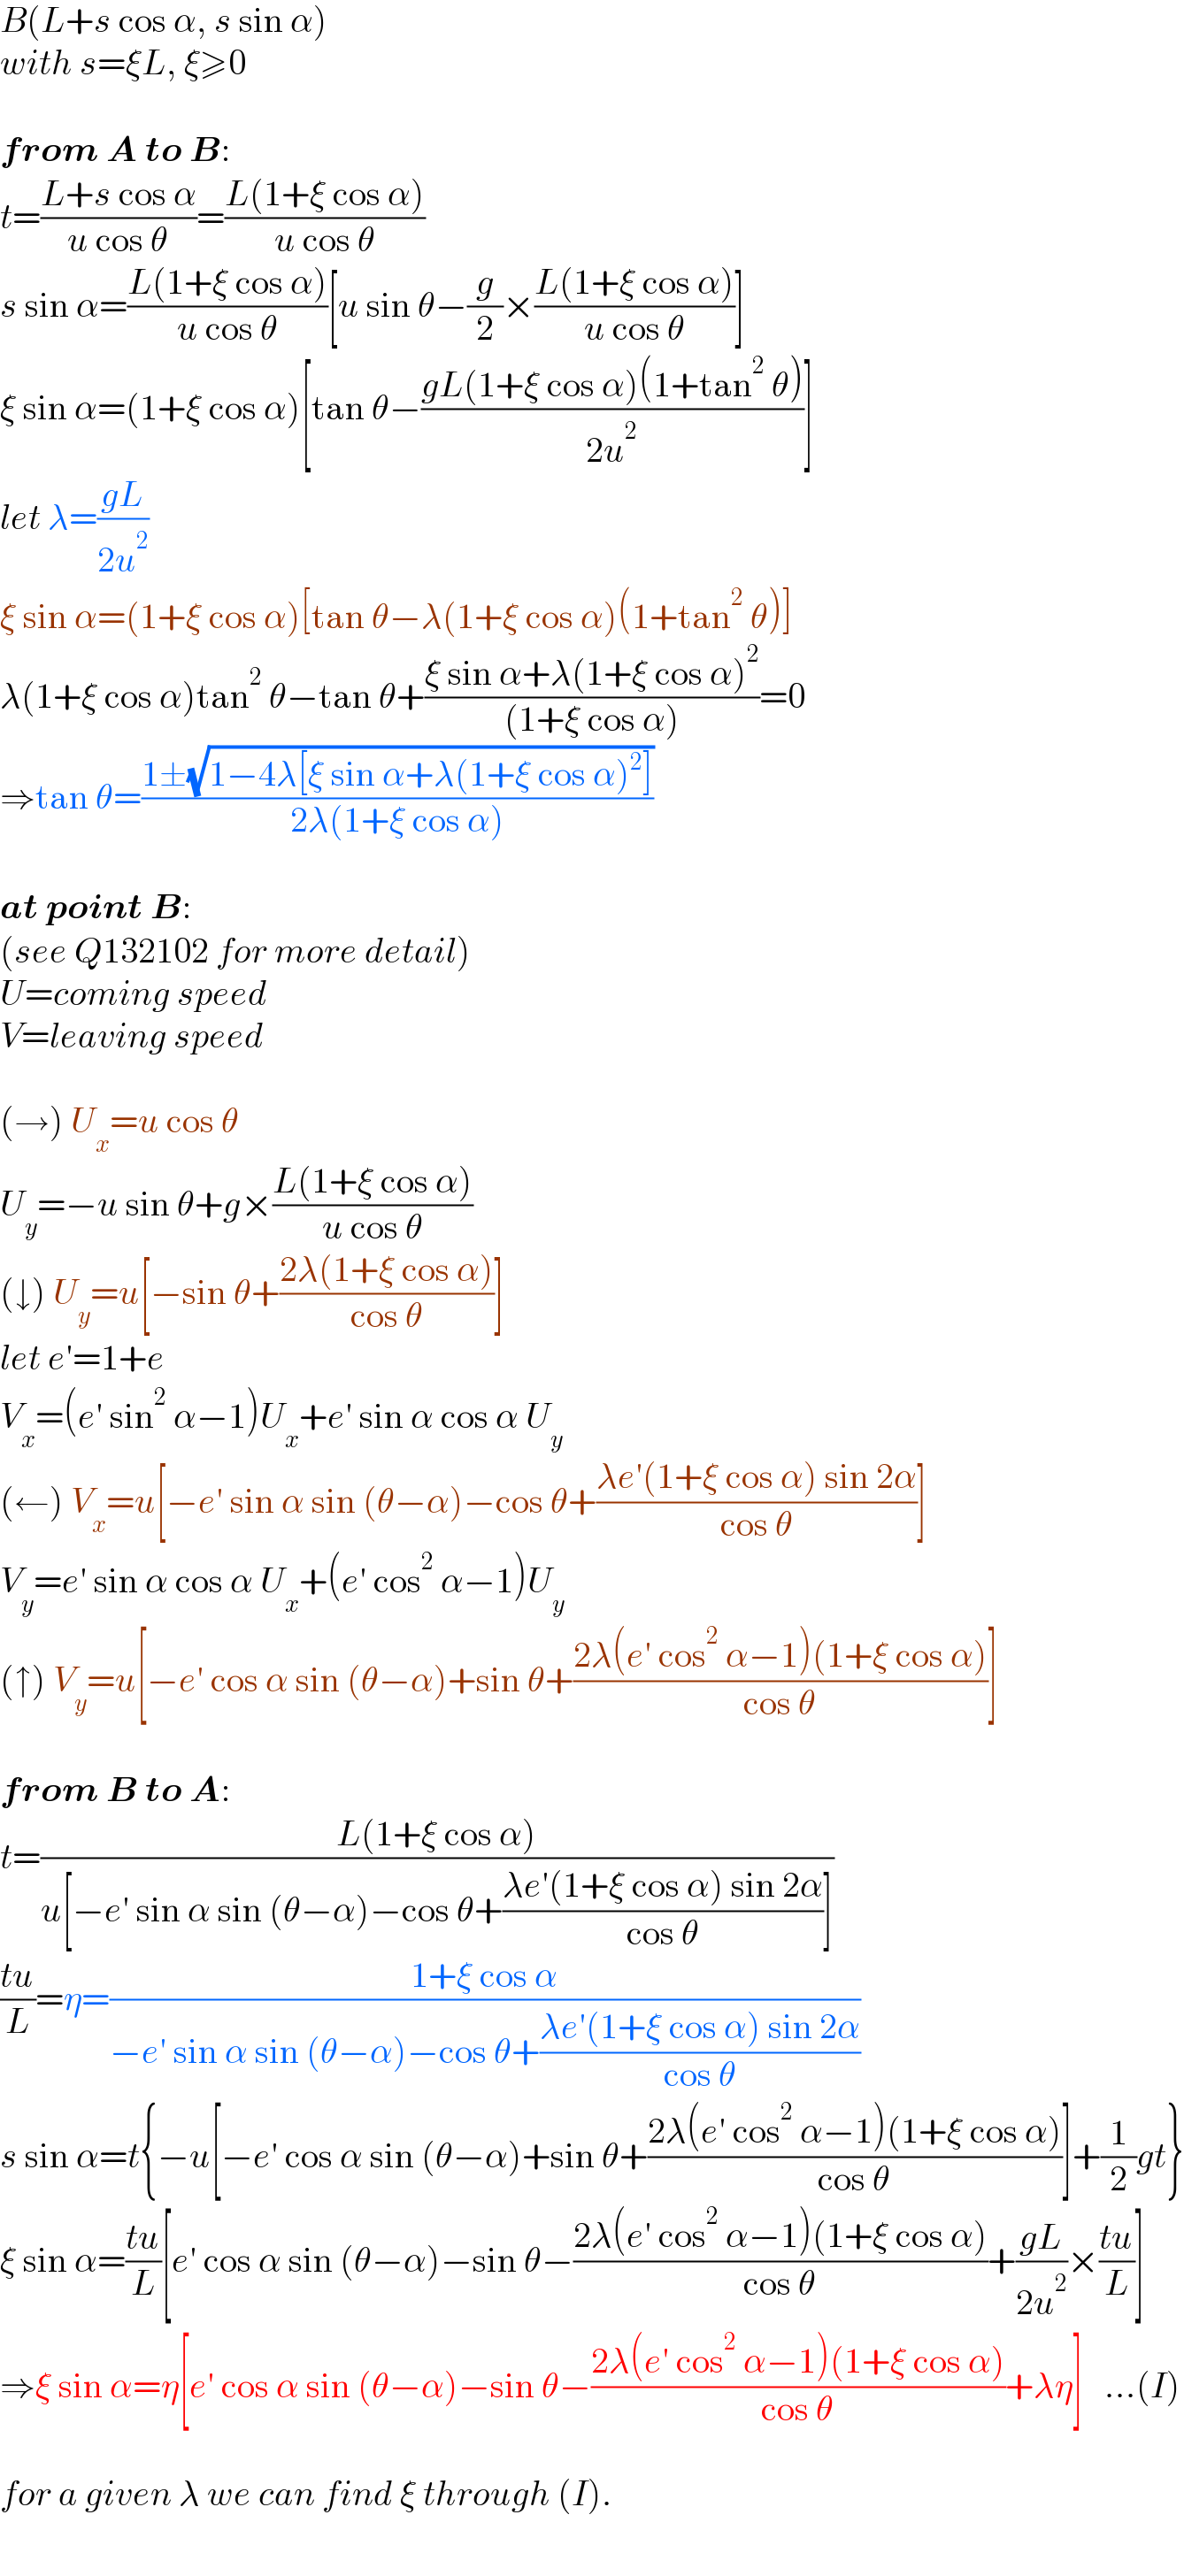 B(L+s cos α, s sin α)  with s=ξL, ξ≥0    from A to B:  t=((L+s cos α)/(u cos θ))=((L(1+ξ cos α))/(u cos θ))  s sin α=((L(1+ξ cos α))/(u cos θ))[u sin θ−(g/2)×((L(1+ξ cos α))/(u cos θ))]  ξ sin α=(1+ξ cos α)[tan θ−((gL(1+ξ cos α)(1+tan^2  θ))/(2u^2 ))]  let λ=((gL)/(2u^2 ))  ξ sin α=(1+ξ cos α)[tan θ−λ(1+ξ cos α)(1+tan^2  θ)]  λ(1+ξ cos α)tan^2  θ−tan θ+((ξ sin α+λ(1+ξ cos α)^2 )/((1+ξ cos α)))=0  ⇒tan θ=((1±(√(1−4λ[ξ sin α+λ(1+ξ cos α)^2 ])))/(2λ(1+ξ cos α)))    at point B:  (see Q132102 for more detail)  U=coming speed  V=leaving speed    (→) U_x =u cos θ  U_y =−u sin θ+g×((L(1+ξ cos α))/(u cos θ))  (↓) U_y =u[−sin θ+((2λ(1+ξ cos α))/(cos θ))]  let e′=1+e  V_x =(e′ sin^2  α−1)U_x +e′ sin α cos α U_y   (←) V_x =u[−e′ sin α sin (θ−α)−cos θ+((λe′(1+ξ cos α) sin 2α)/(cos θ))]  V_y =e′ sin α cos α U_x +(e′ cos^2  α−1)U_y   (↑) V_y =u[−e′ cos α sin (θ−α)+sin θ+((2λ(e′ cos^2  α−1)(1+ξ cos α))/(cos θ))]    from B to A:  t=((L(1+ξ cos α))/(u[−e′ sin α sin (θ−α)−cos θ+((λe′(1+ξ cos α) sin 2α)/(cos θ))]))  ((tu)/L)=η=((1+ξ cos α)/(−e′ sin α sin (θ−α)−cos θ+((λe′(1+ξ cos α) sin 2α)/(cos θ))))  s sin α=t{−u[−e′ cos α sin (θ−α)+sin θ+((2λ(e′ cos^2  α−1)(1+ξ cos α))/(cos θ))]+(1/2)gt}  ξ sin α=((tu)/L)[e′ cos α sin (θ−α)−sin θ−((2λ(e′ cos^2  α−1)(1+ξ cos α))/(cos θ))+((gL)/(2u^2 ))×((tu)/L)]  ⇒ξ sin α=η[e′ cos α sin (θ−α)−sin θ−((2λ(e′ cos^2  α−1)(1+ξ cos α))/(cos θ))+λη]   ...(I)    for a given λ we can find ξ through (I).  